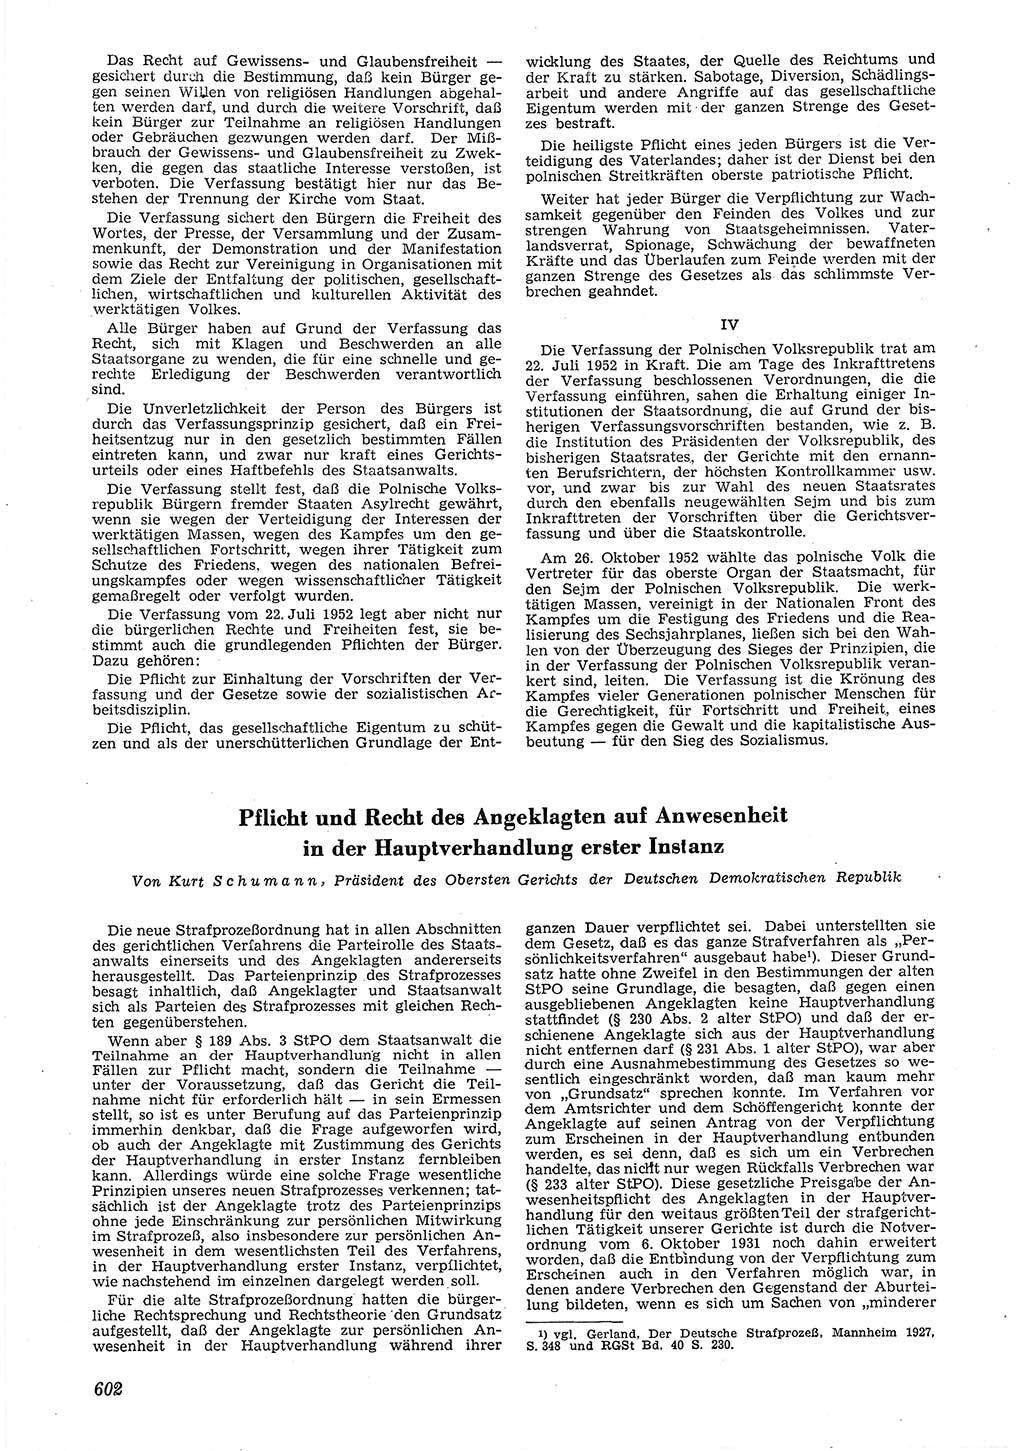 Neue Justiz (NJ), Zeitschrift für Recht und Rechtswissenschaft [Deutsche Demokratische Republik (DDR)], 6. Jahrgang 1952, Seite 602 (NJ DDR 1952, S. 602)